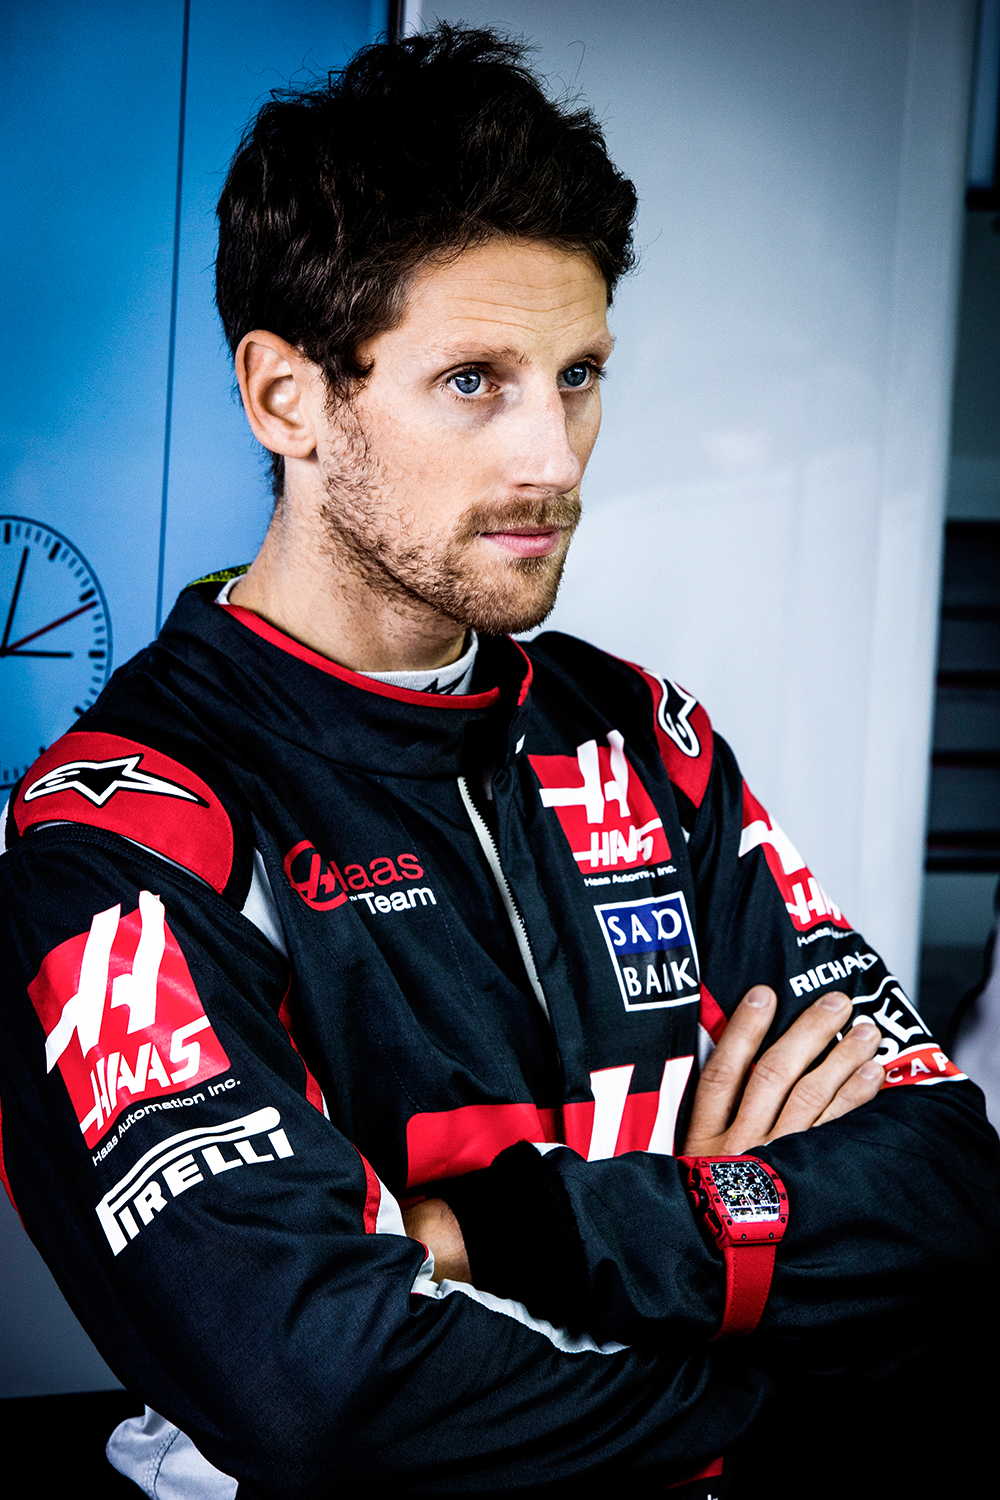 Romain-Grosjean-wearing-RM-011-Red-TPT_1.jpg